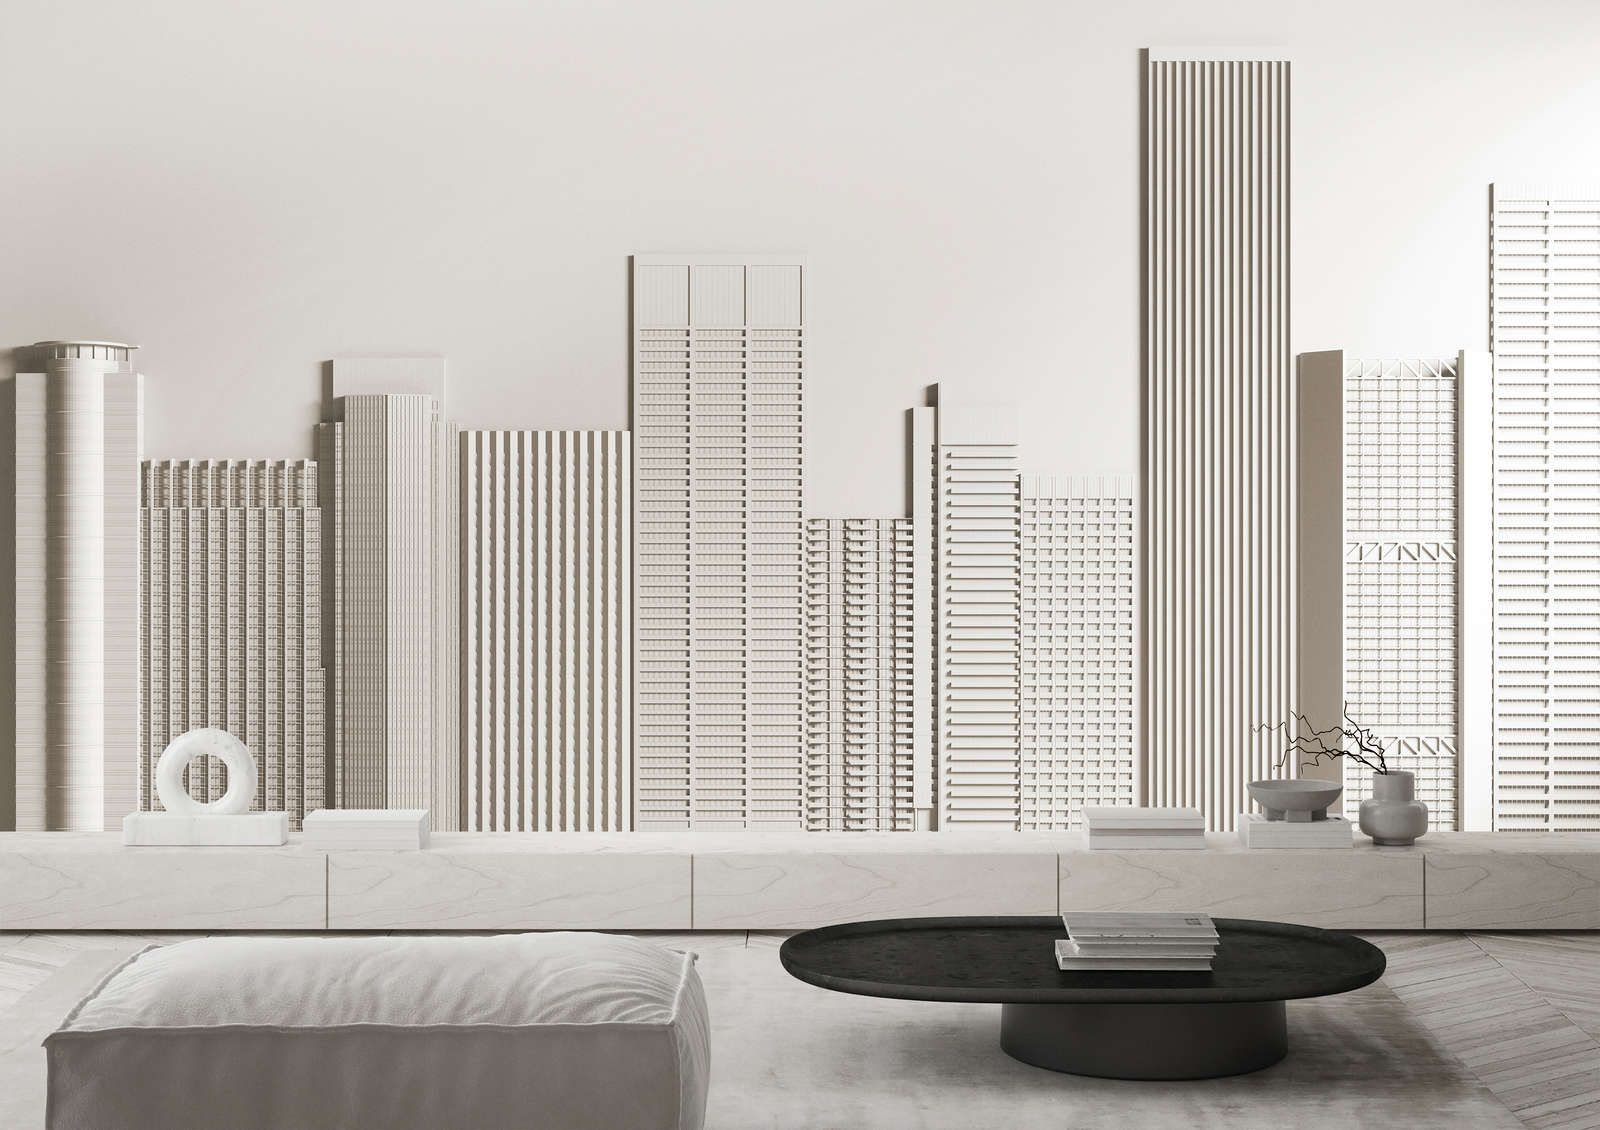             Fototapete »new skyline« - Architektur mit Wolkenkratzern – Glattes, leicht glänzendes Premiumvlies
        